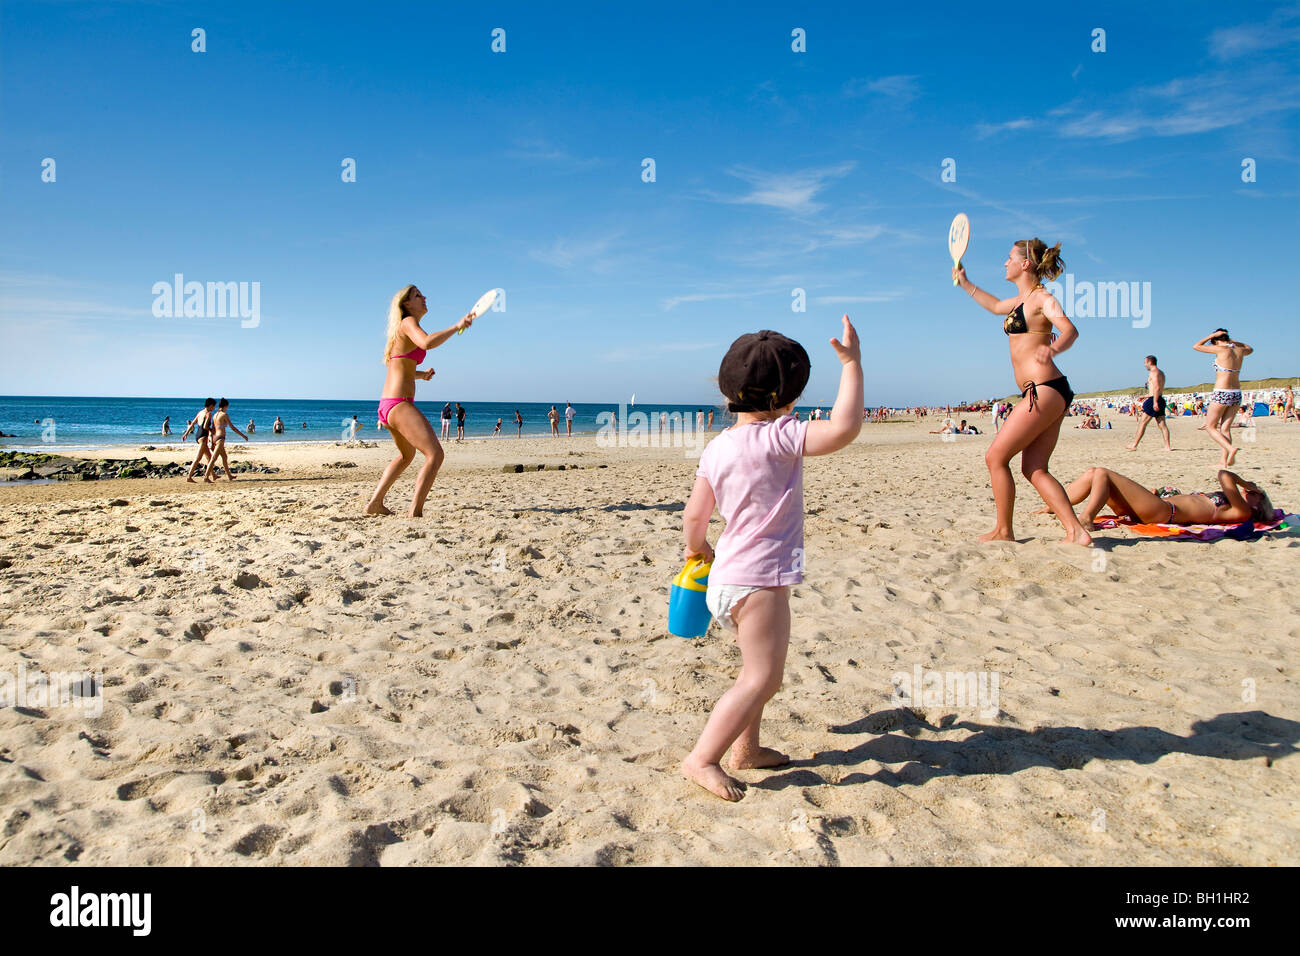 Beach tennis immagini e fotografie stock ad alta risoluzione - Alamy